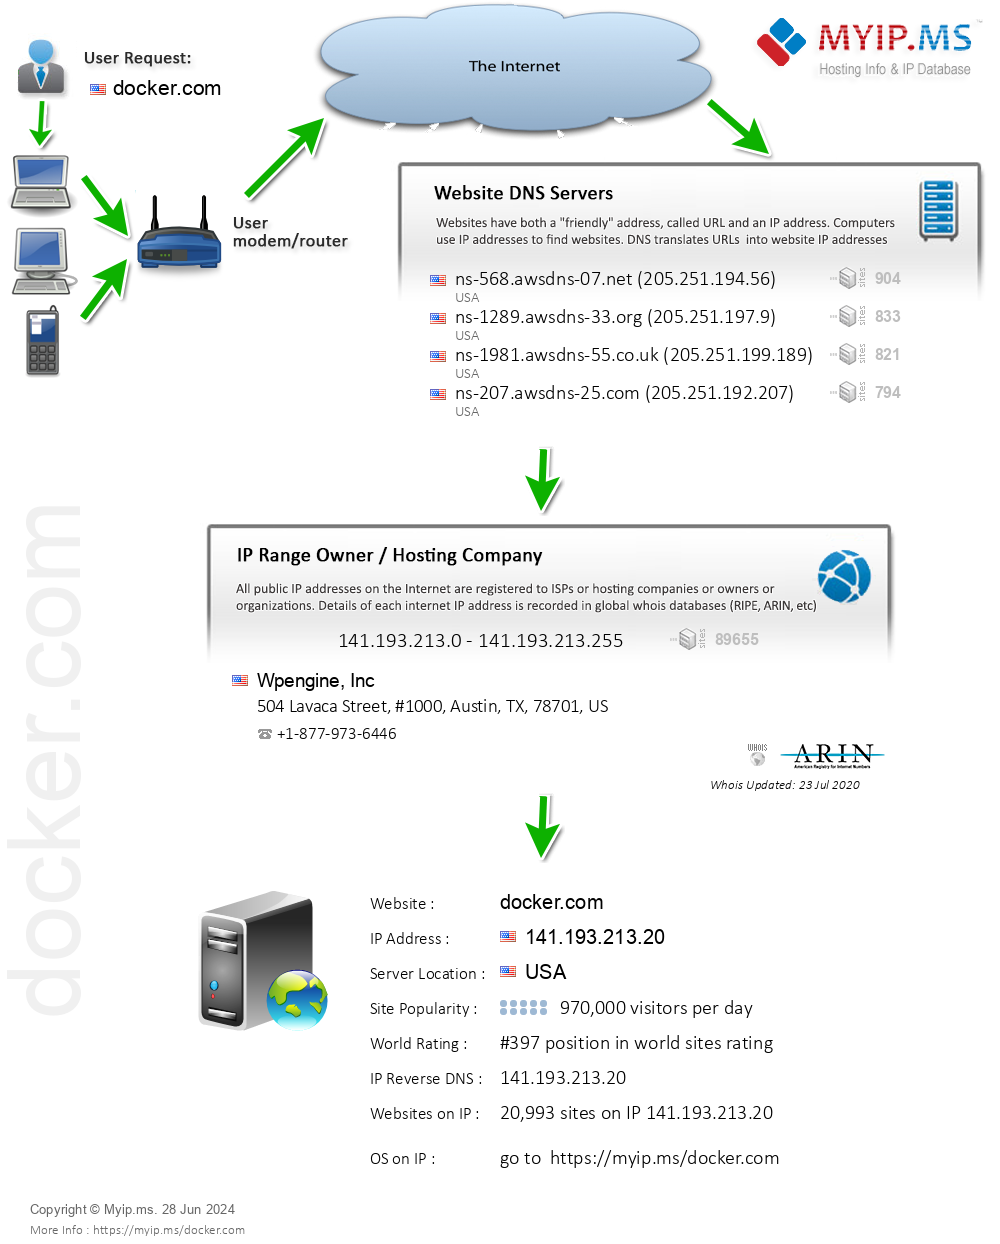 Docker.com - Website Hosting Visual IP Diagram